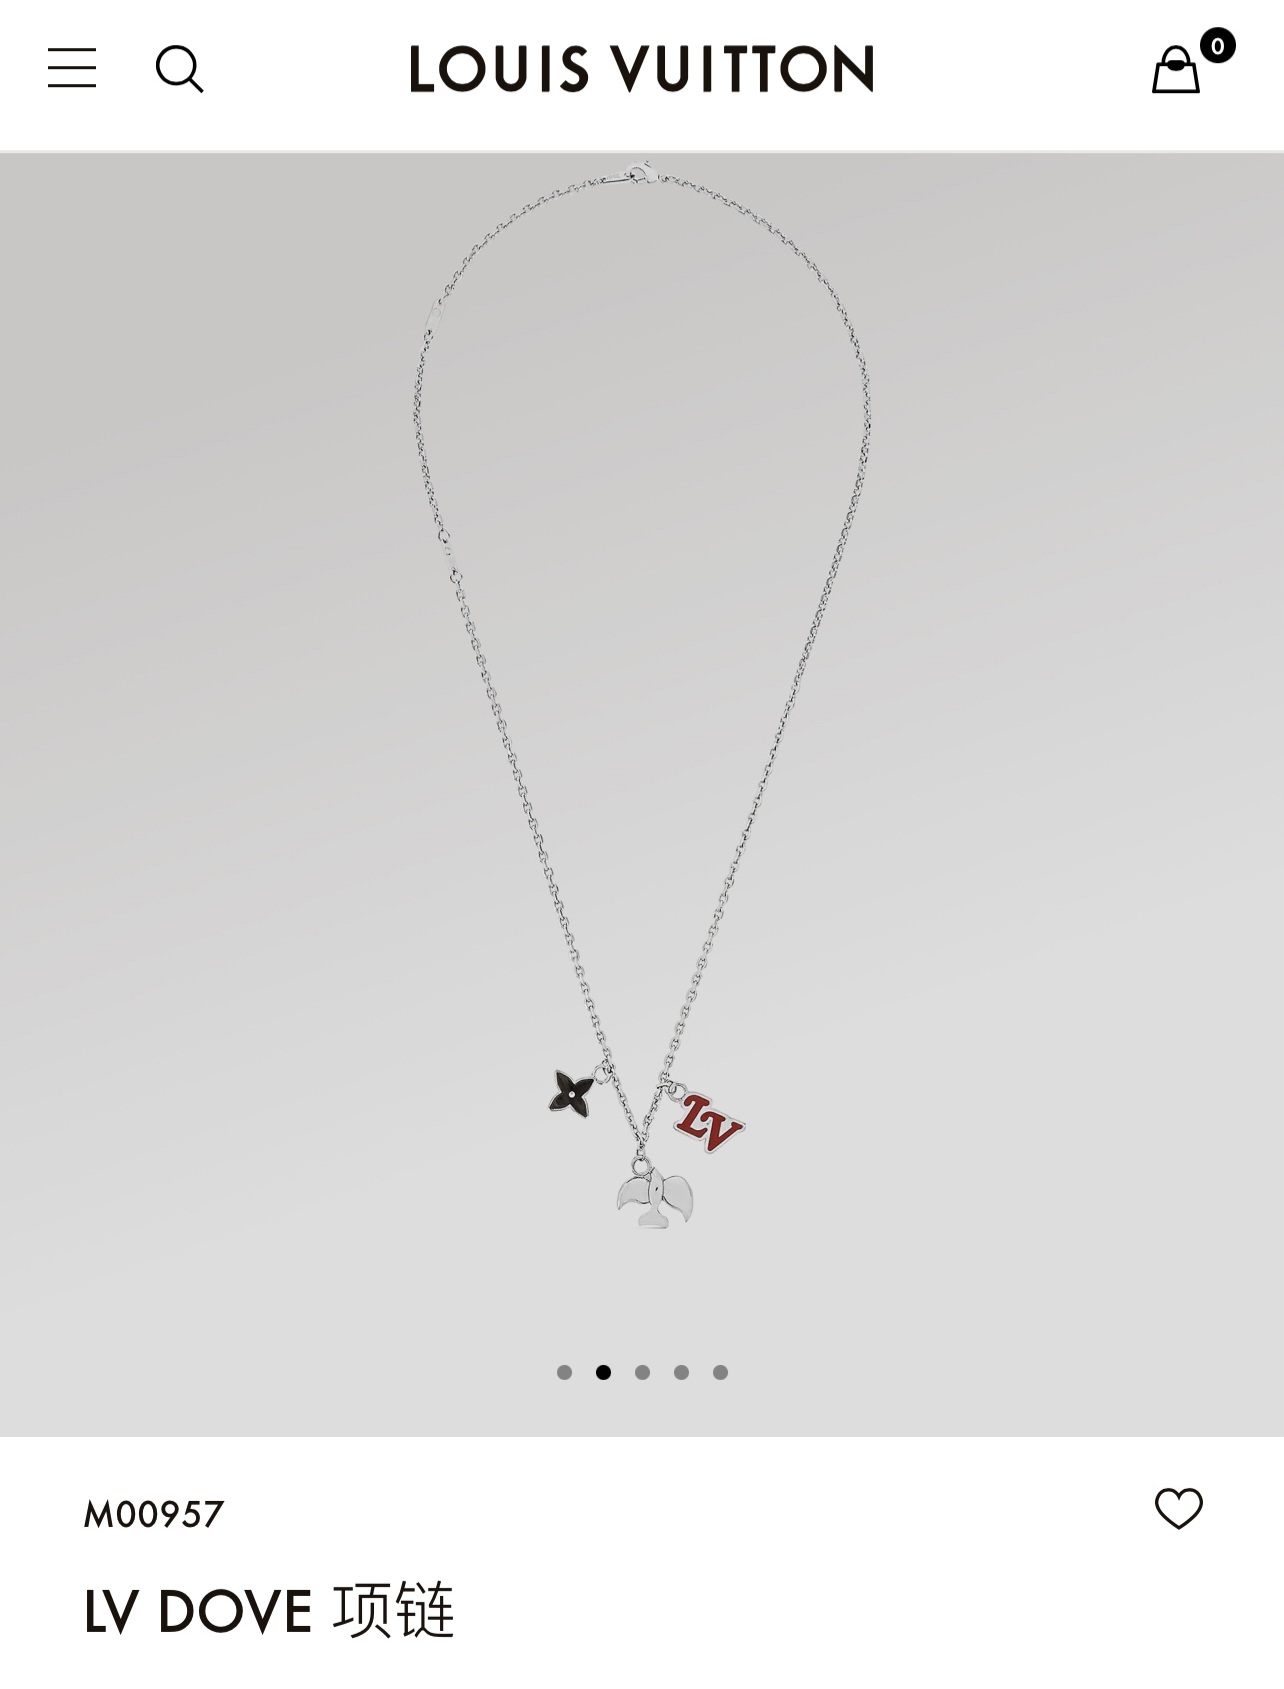 LV Dove necklace – Fibo3Addict